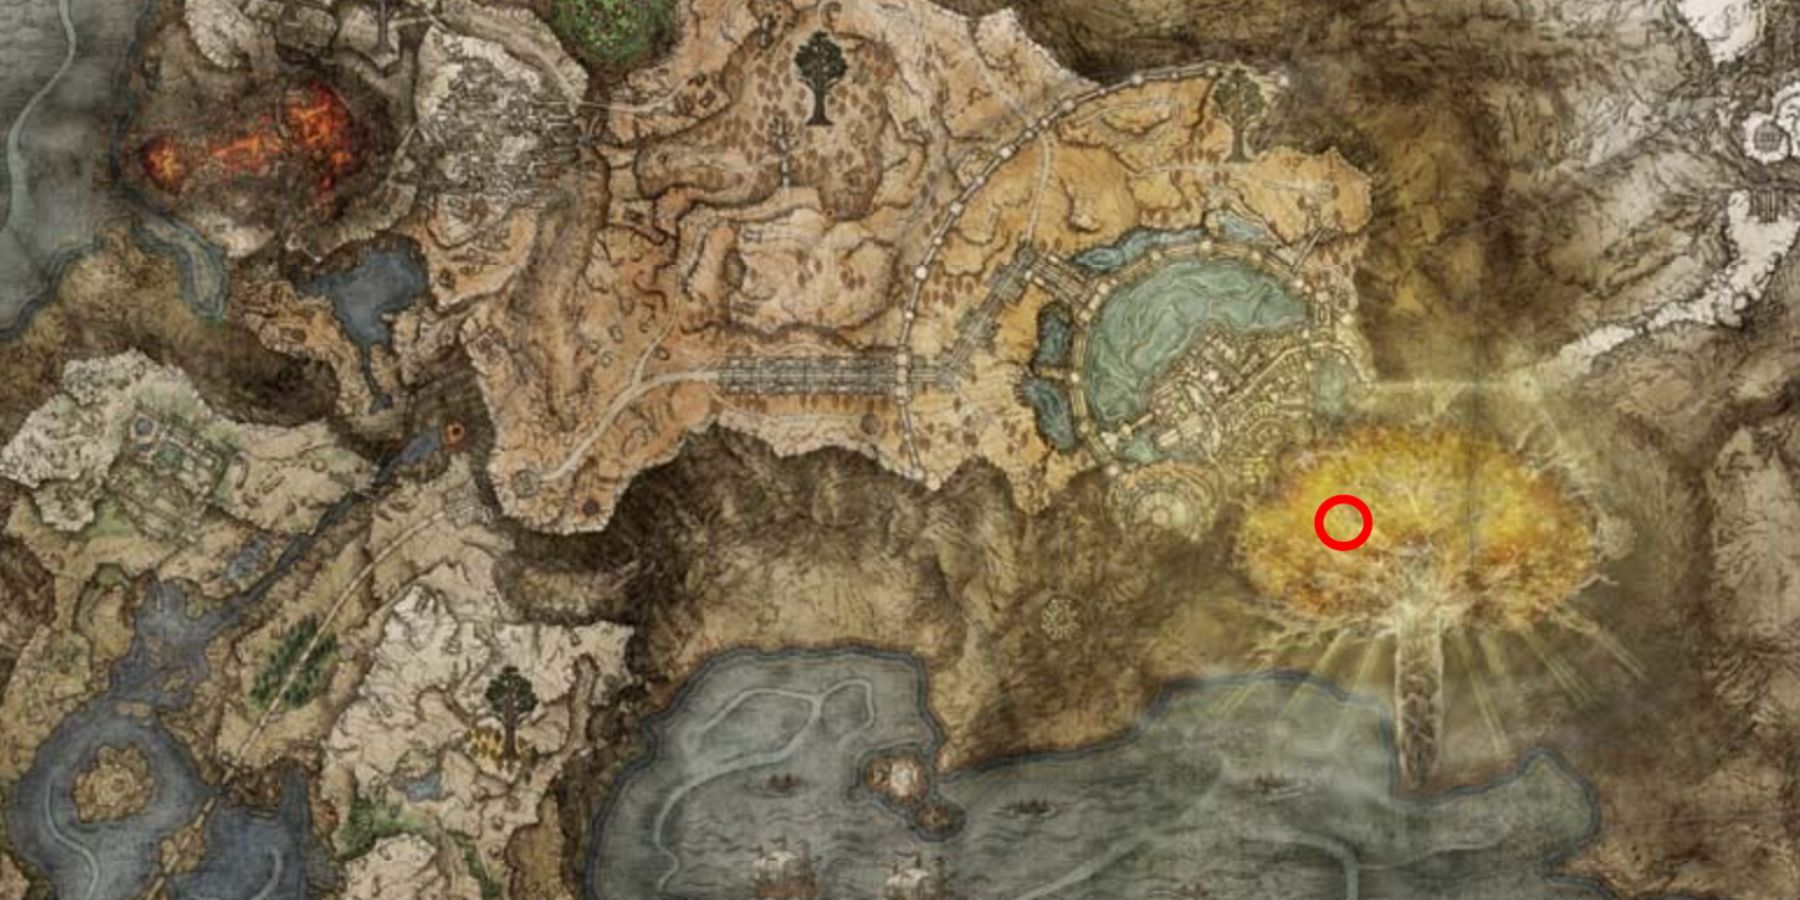  Morgott, the Omen King location on the map in Elden Ring